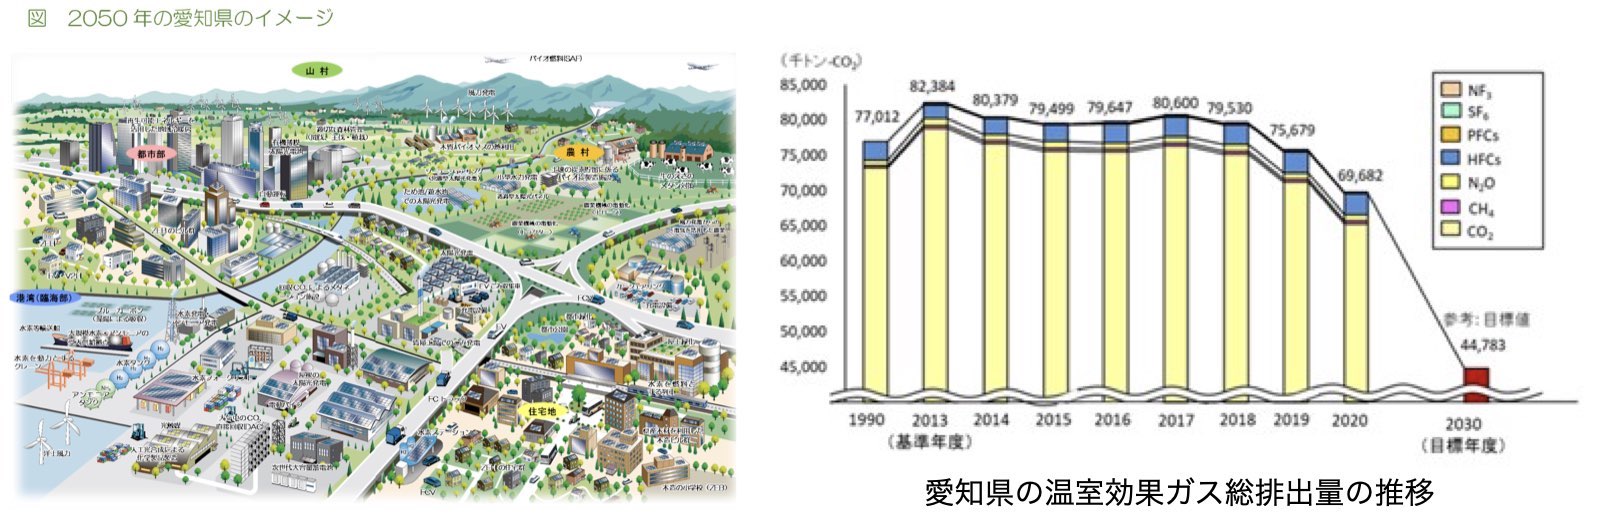 2050年の愛知県イメージ